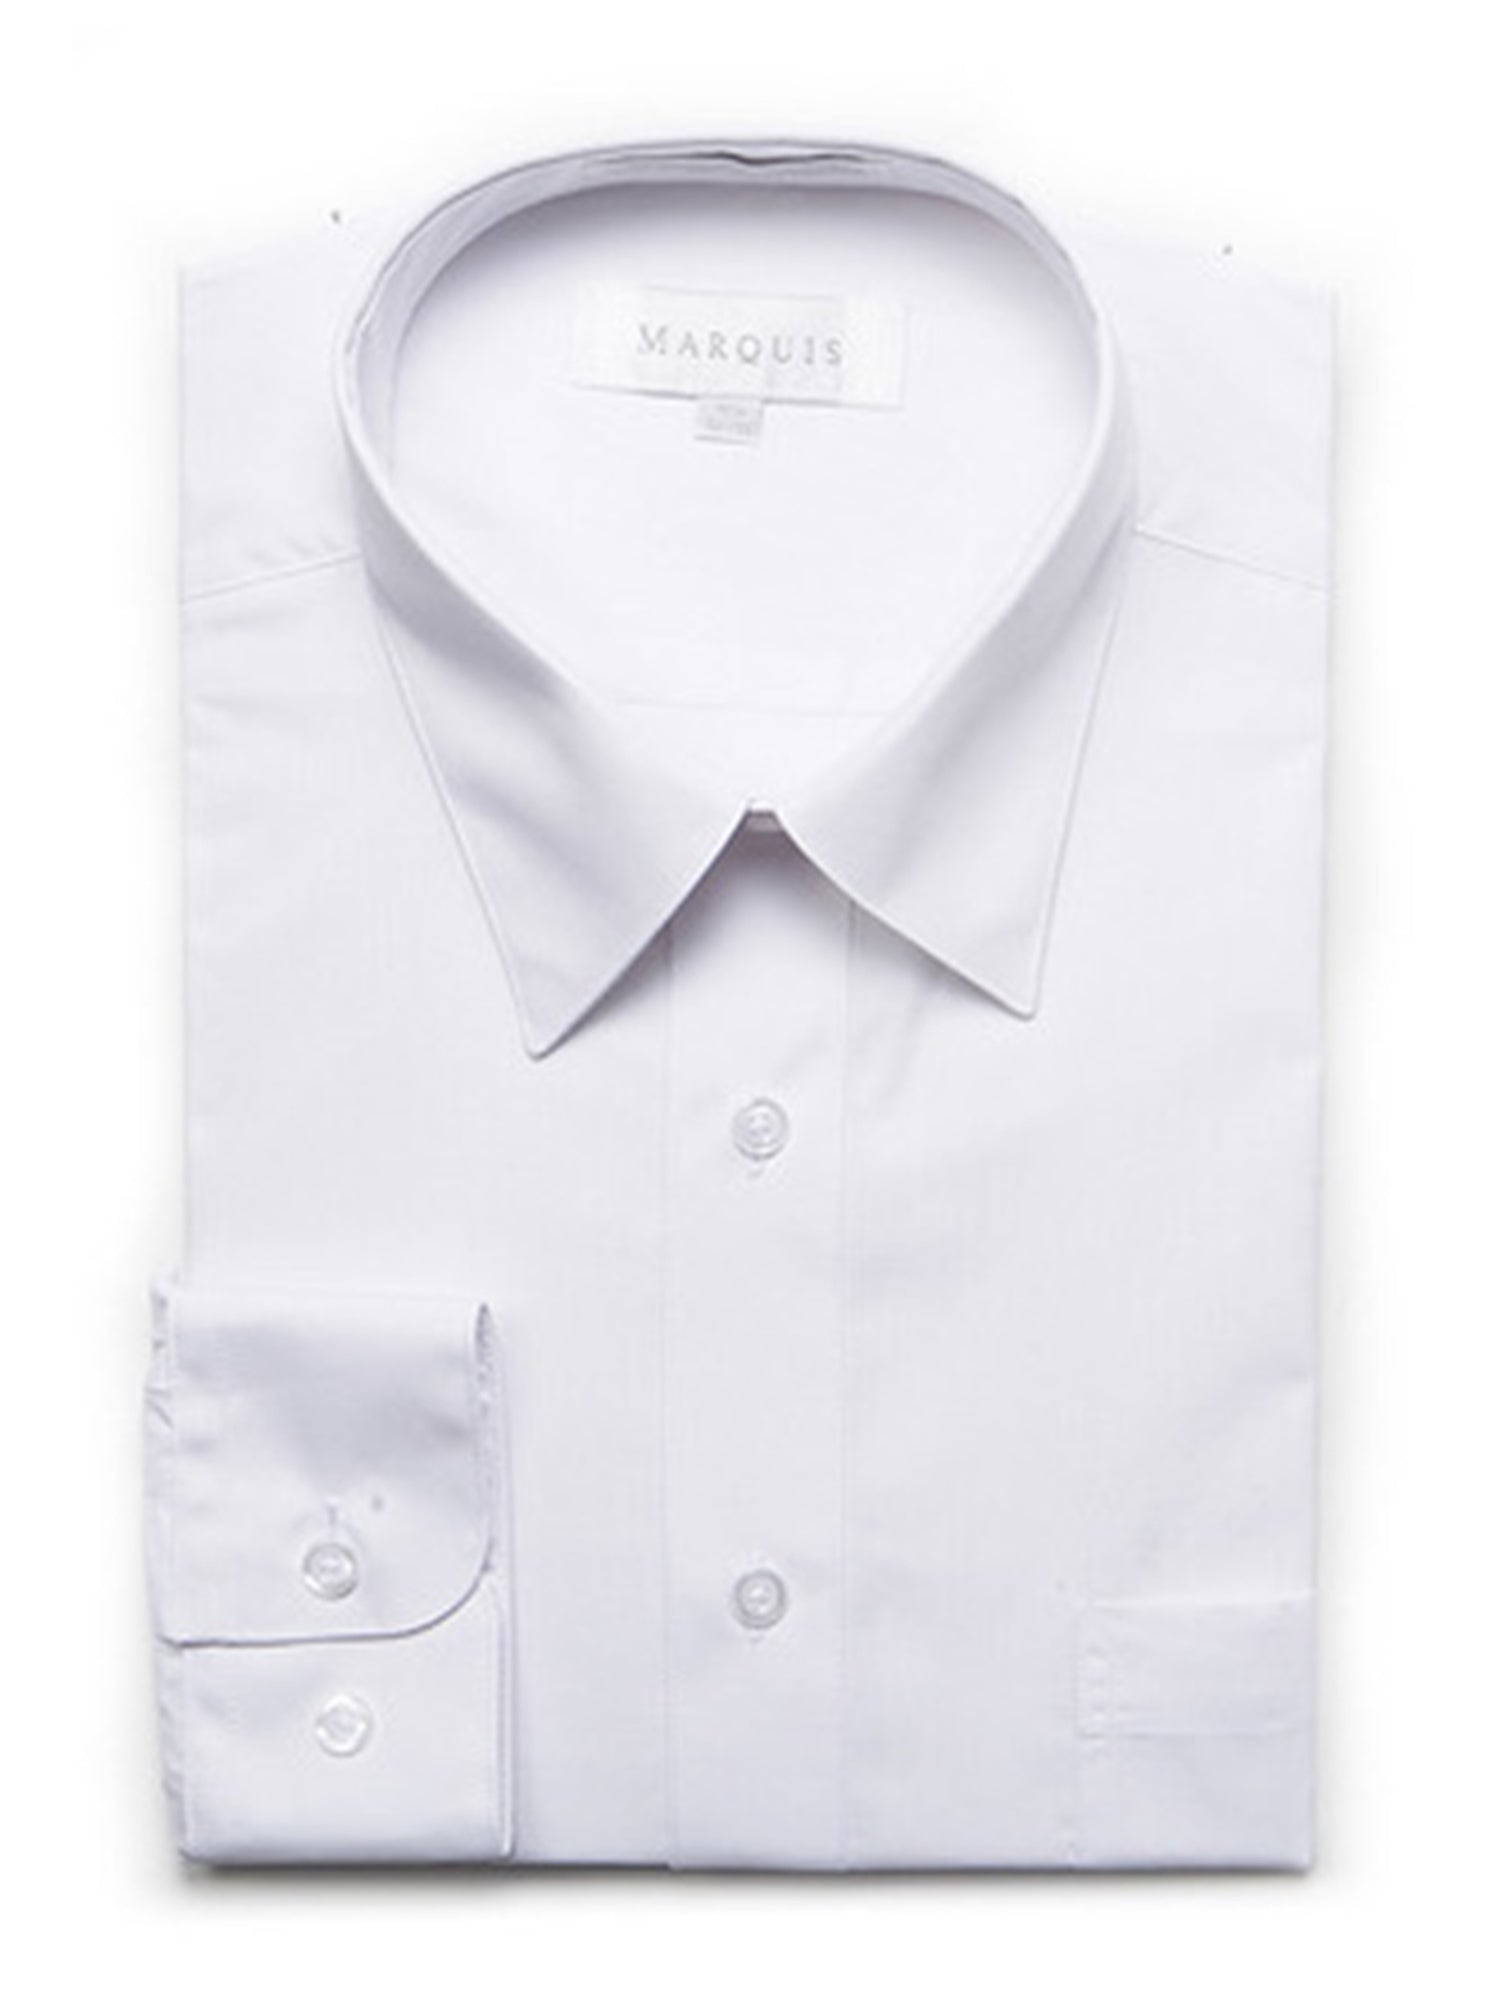 Marquis Men's Long Sleeve Regular Fit Dress Shirt Dress Shirt Marquis White 14.5 Neck 32/33 Sleeve 